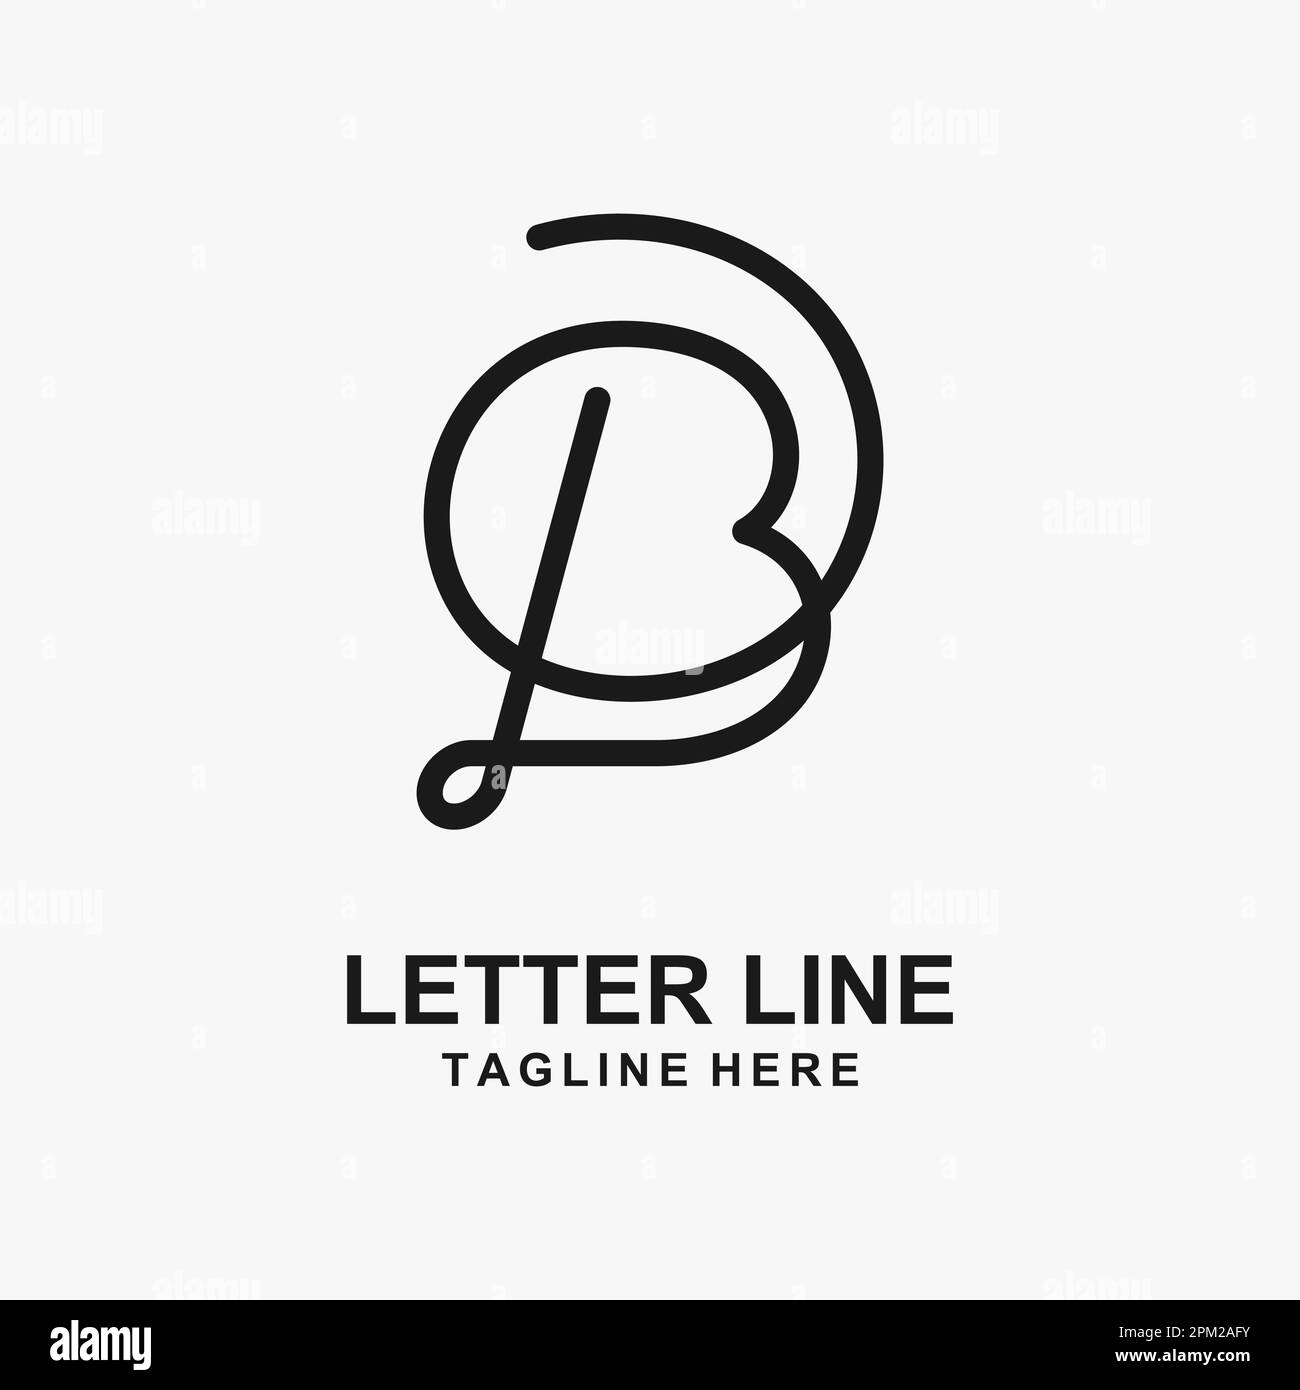 Letter B line logo design Stock Vector